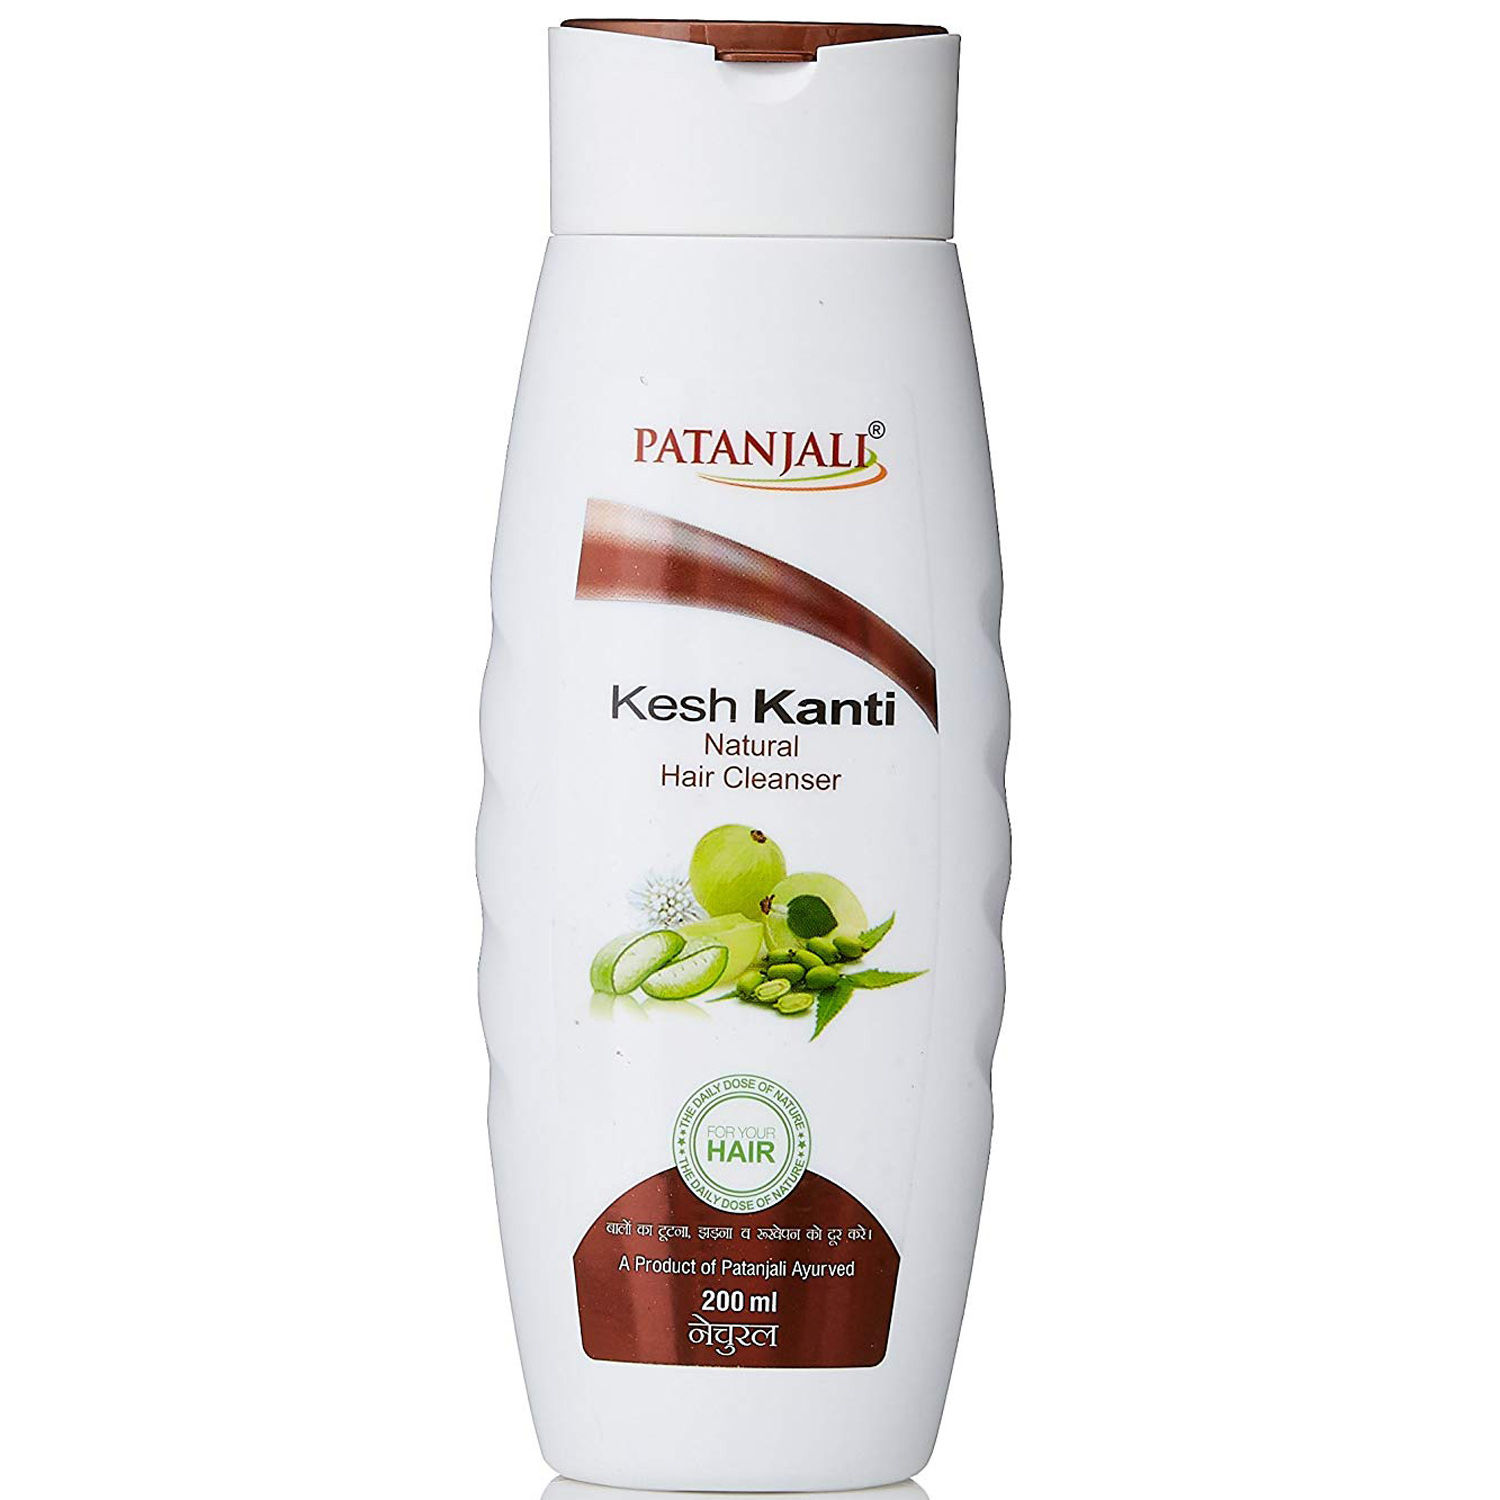 Buy Patanjali Kesh Kanti Natural Hair Cleanser, 200 ml Online